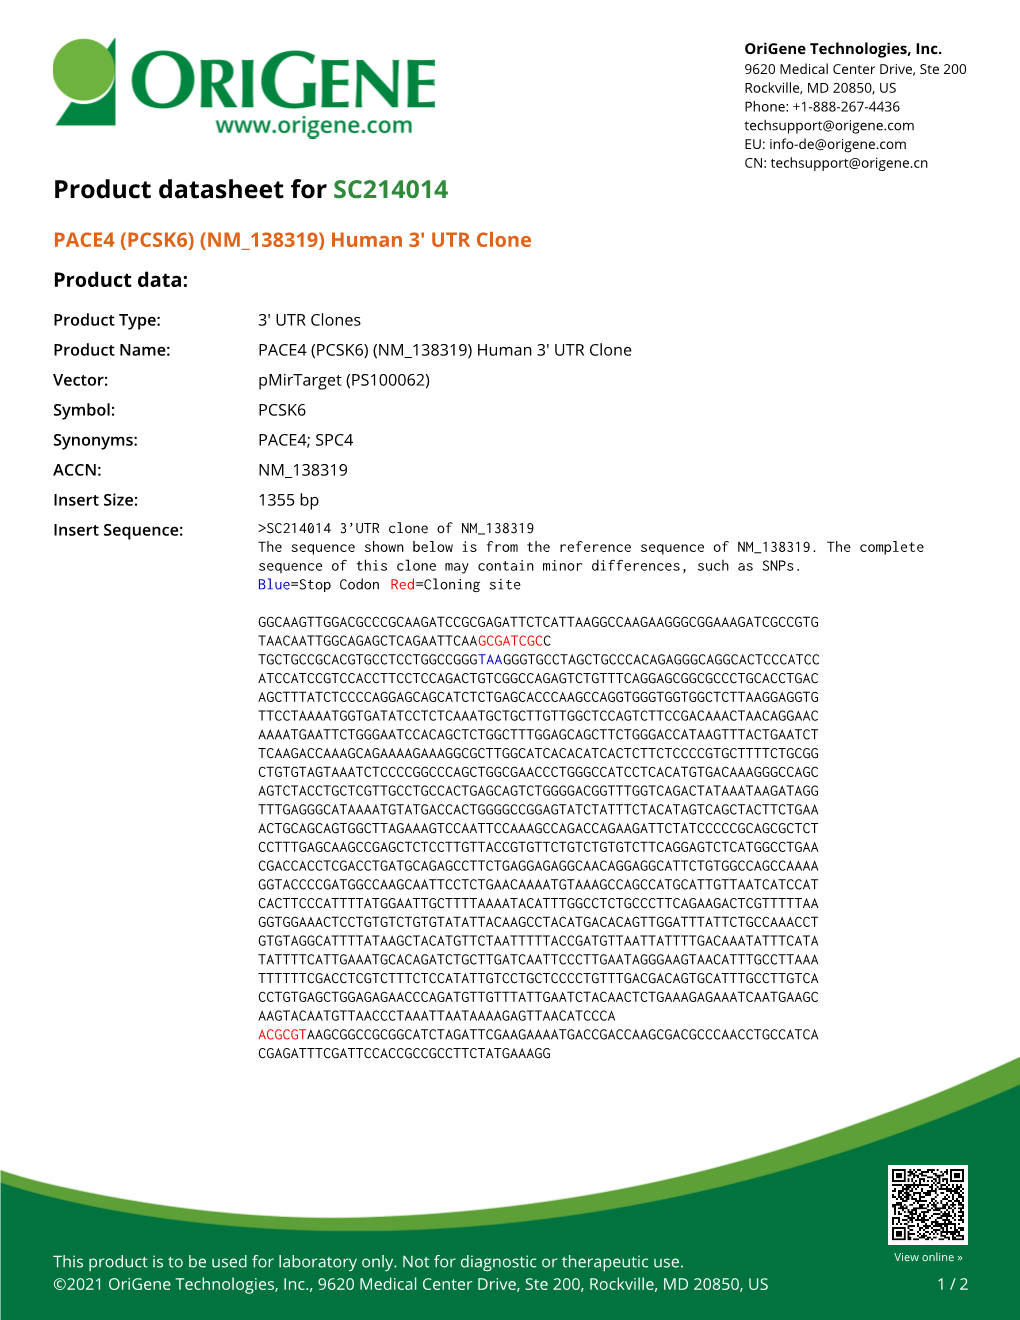 PACE4 (PCSK6) (NM 138319) Human 3' UTR Clone – SC214014